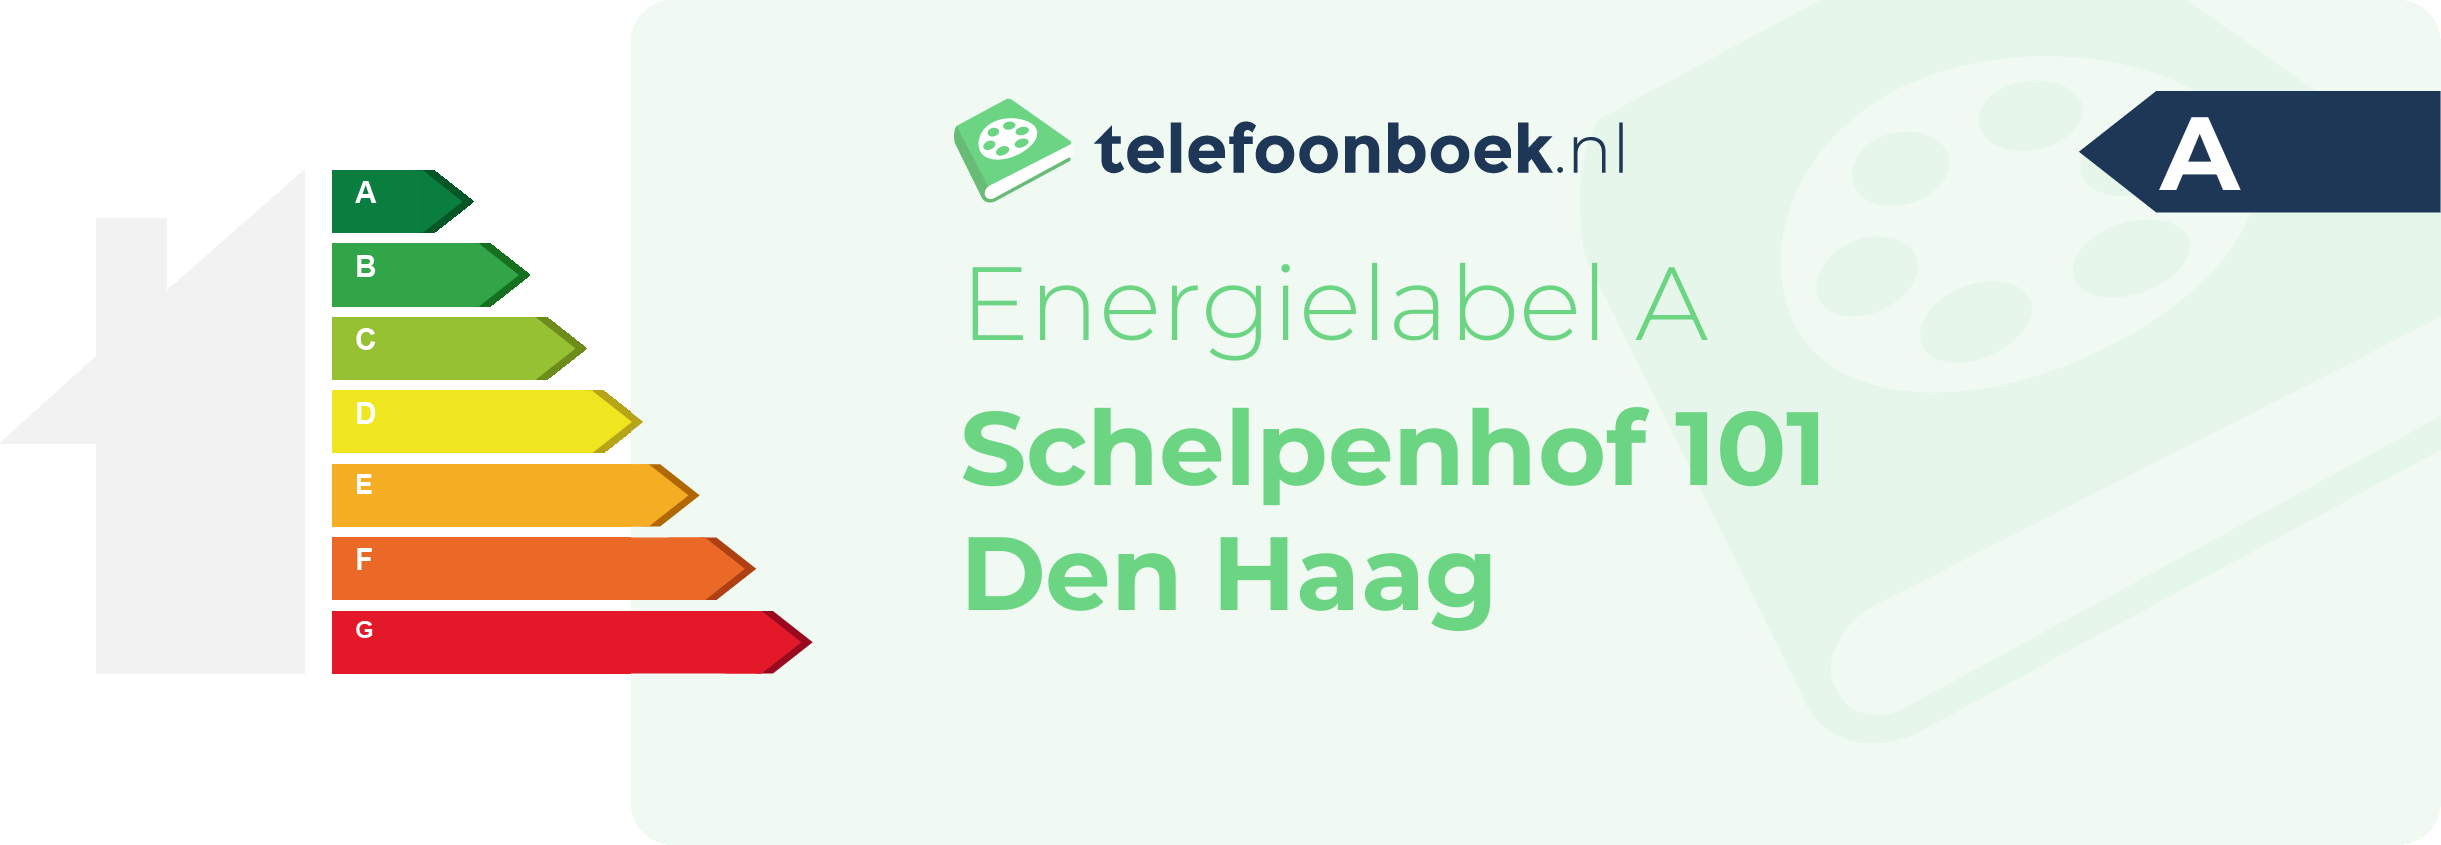 Energielabel Schelpenhof 101 Den Haag